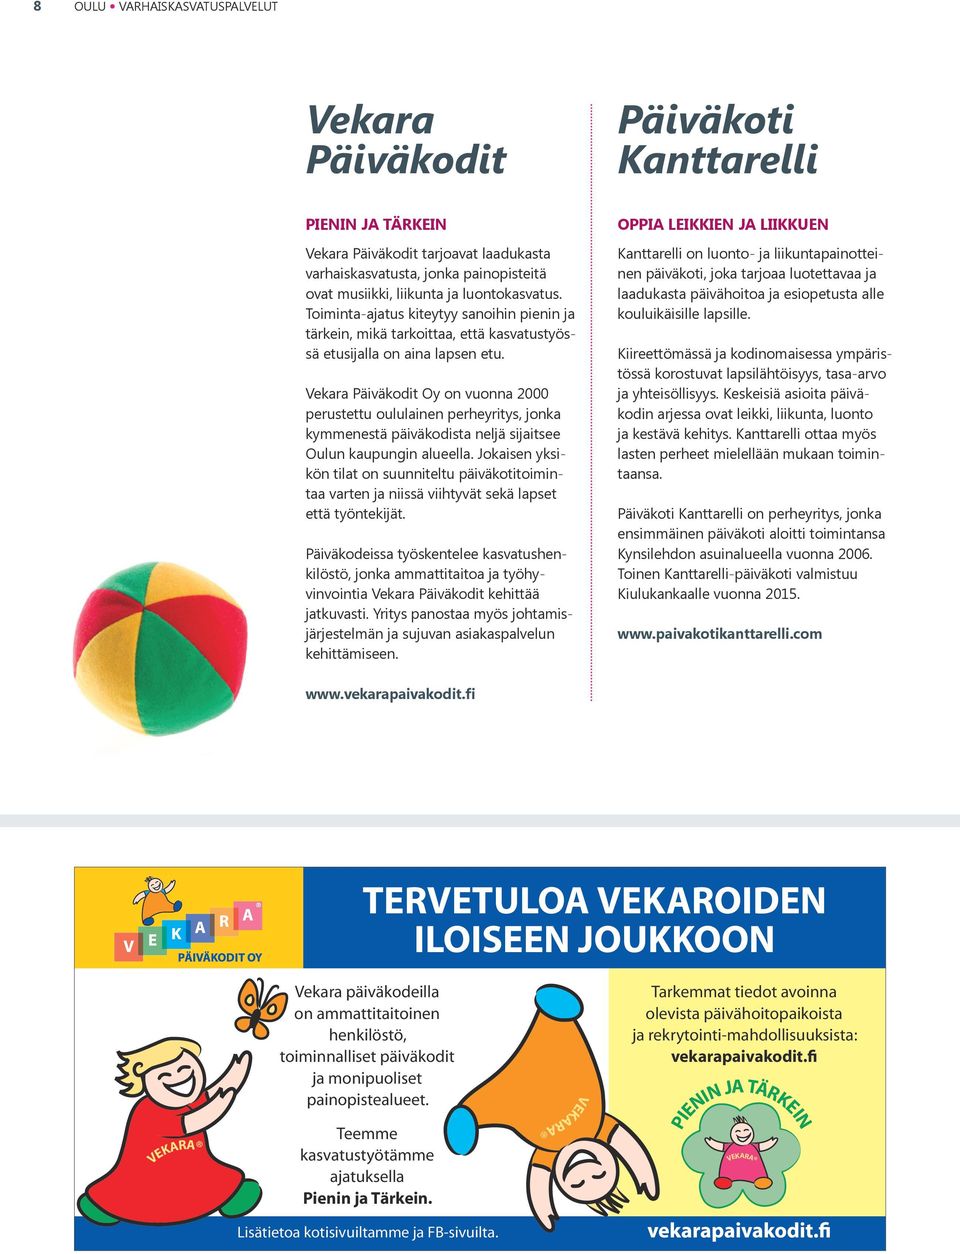 Vekara Päiväkodit Oy on vuonna 2000 perustettu oululainen perheyritys, jonka kymmenestä päiväkodista neljä sijaitsee Oulun kaupungin alueella.